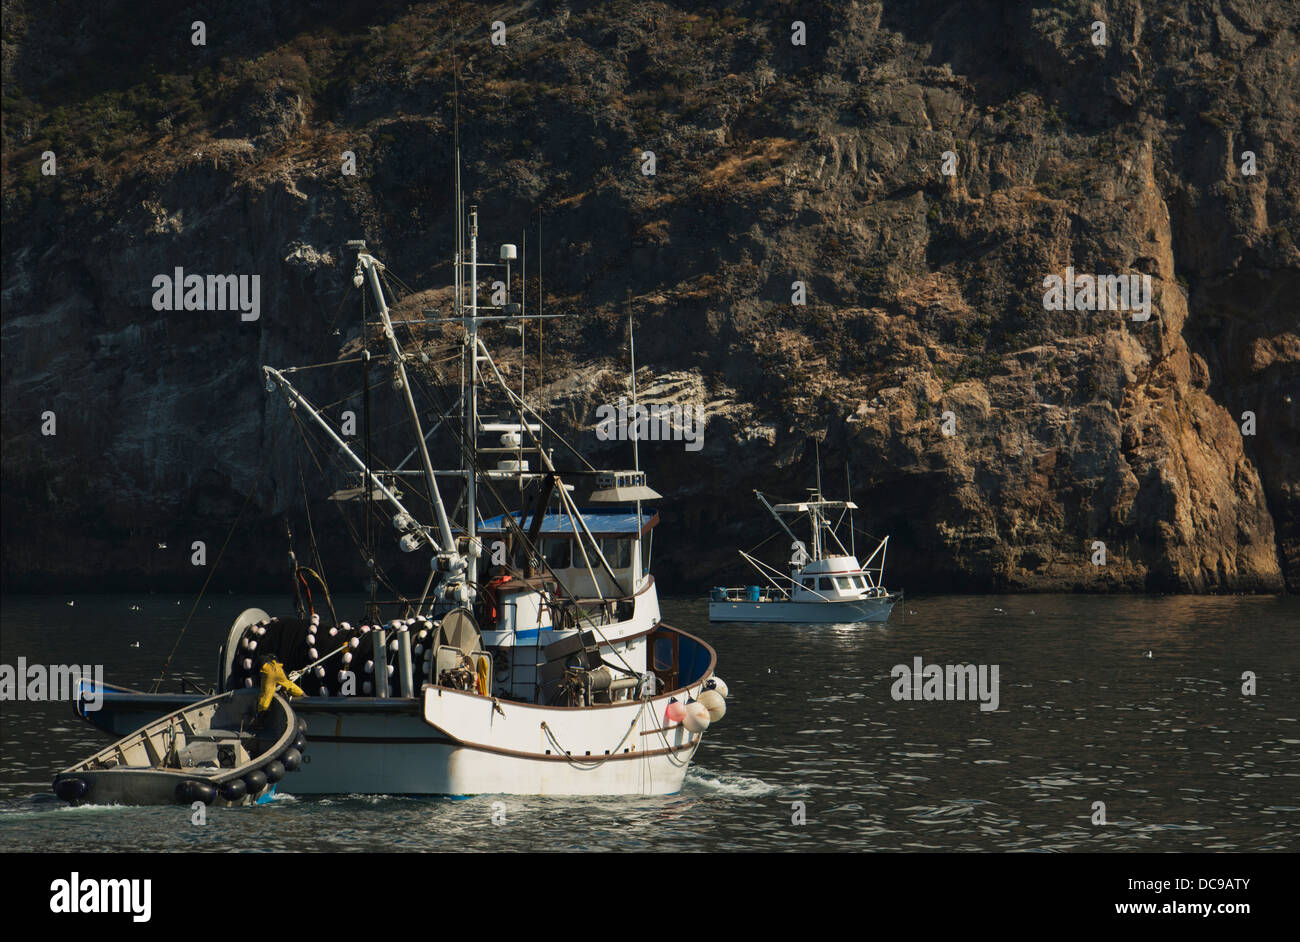 Des bateaux de pêche à l'ancre, la côte du nord de l'île de Santa Cruz, Channel Islands National Park, Californie Banque D'Images